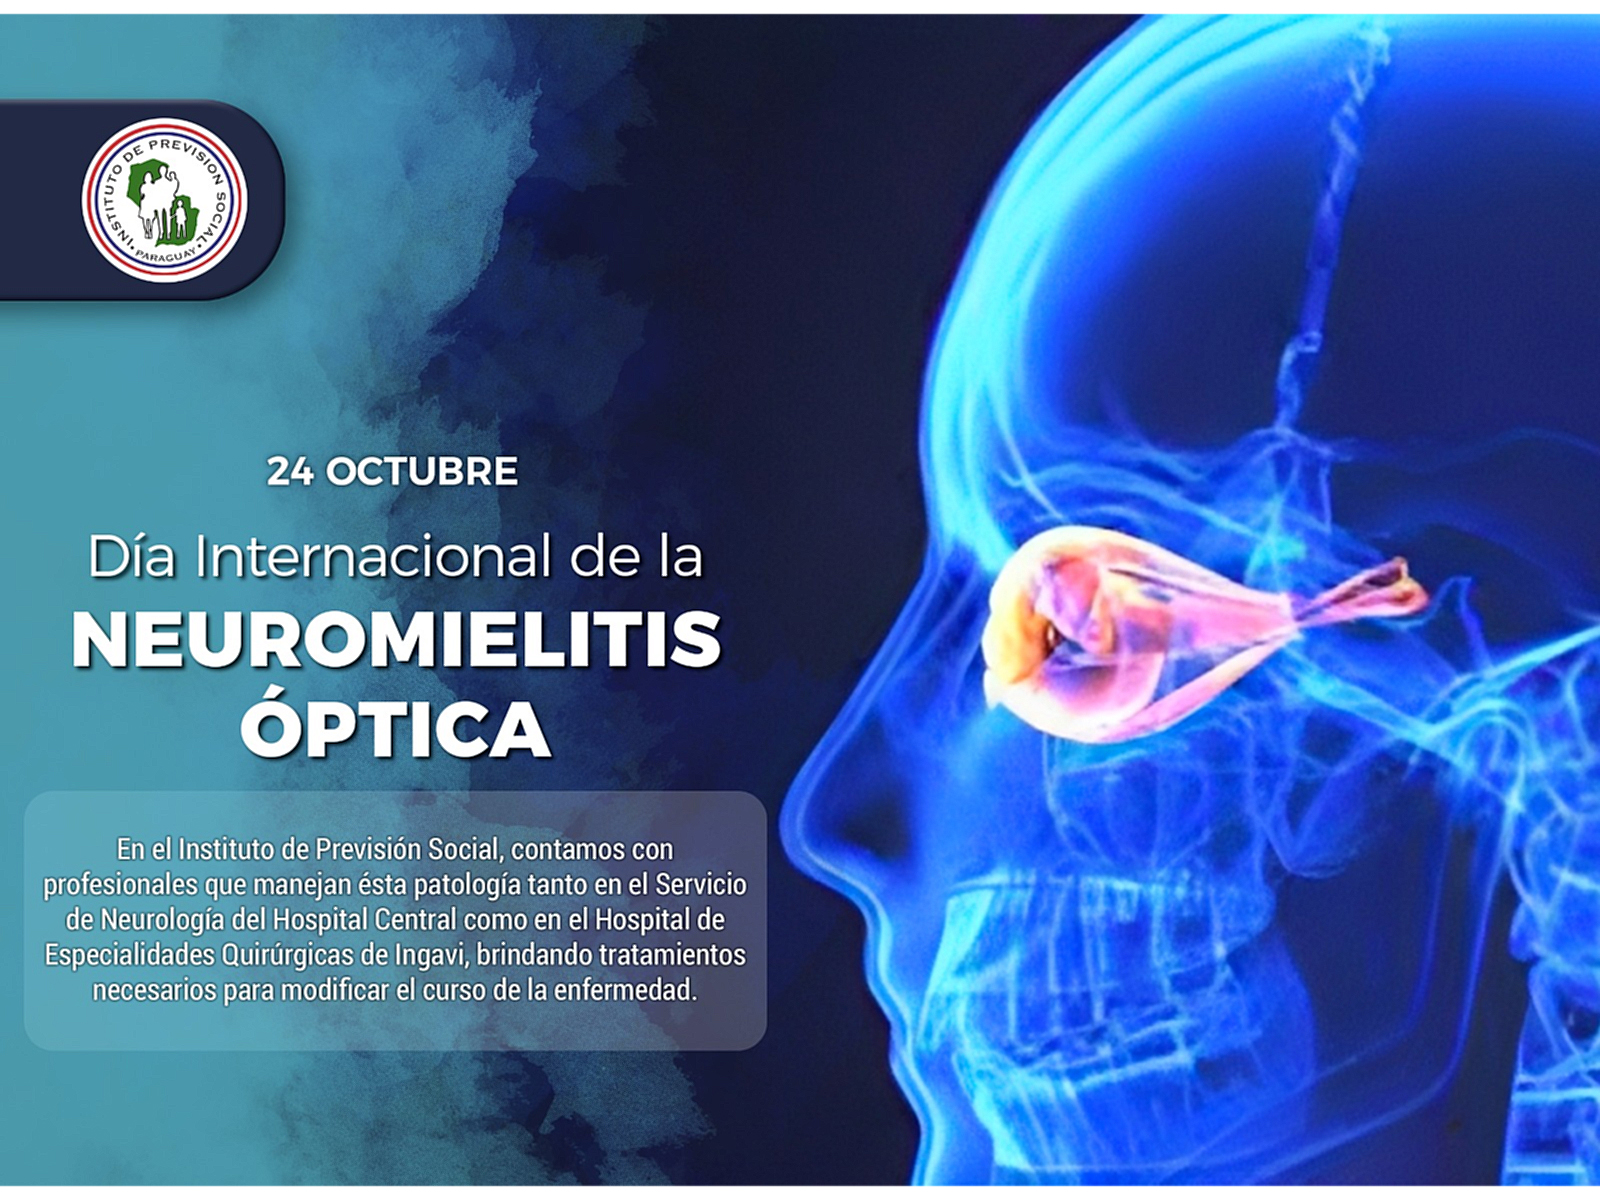 IPS ofrece un tratamiento multidisciplinario a los pacientes que padecen Neuromielitis óptica